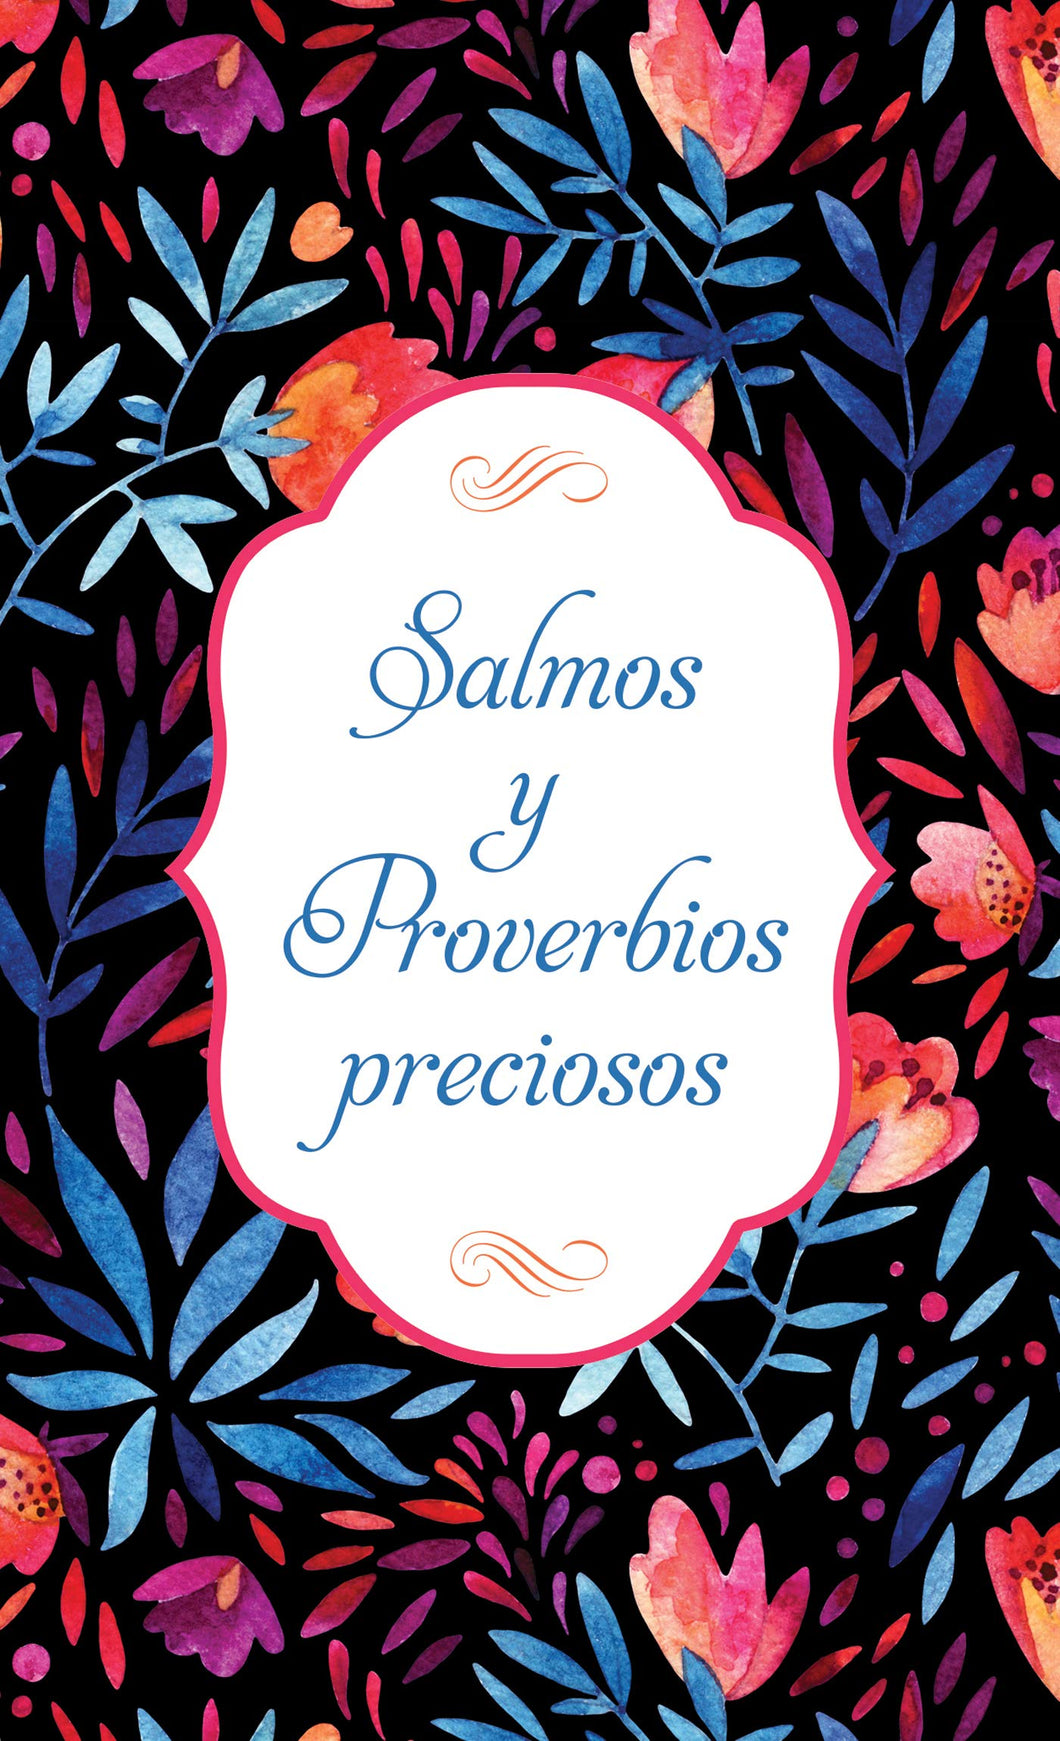 SALMOS Y PROVERBIOS PRECIOSOS